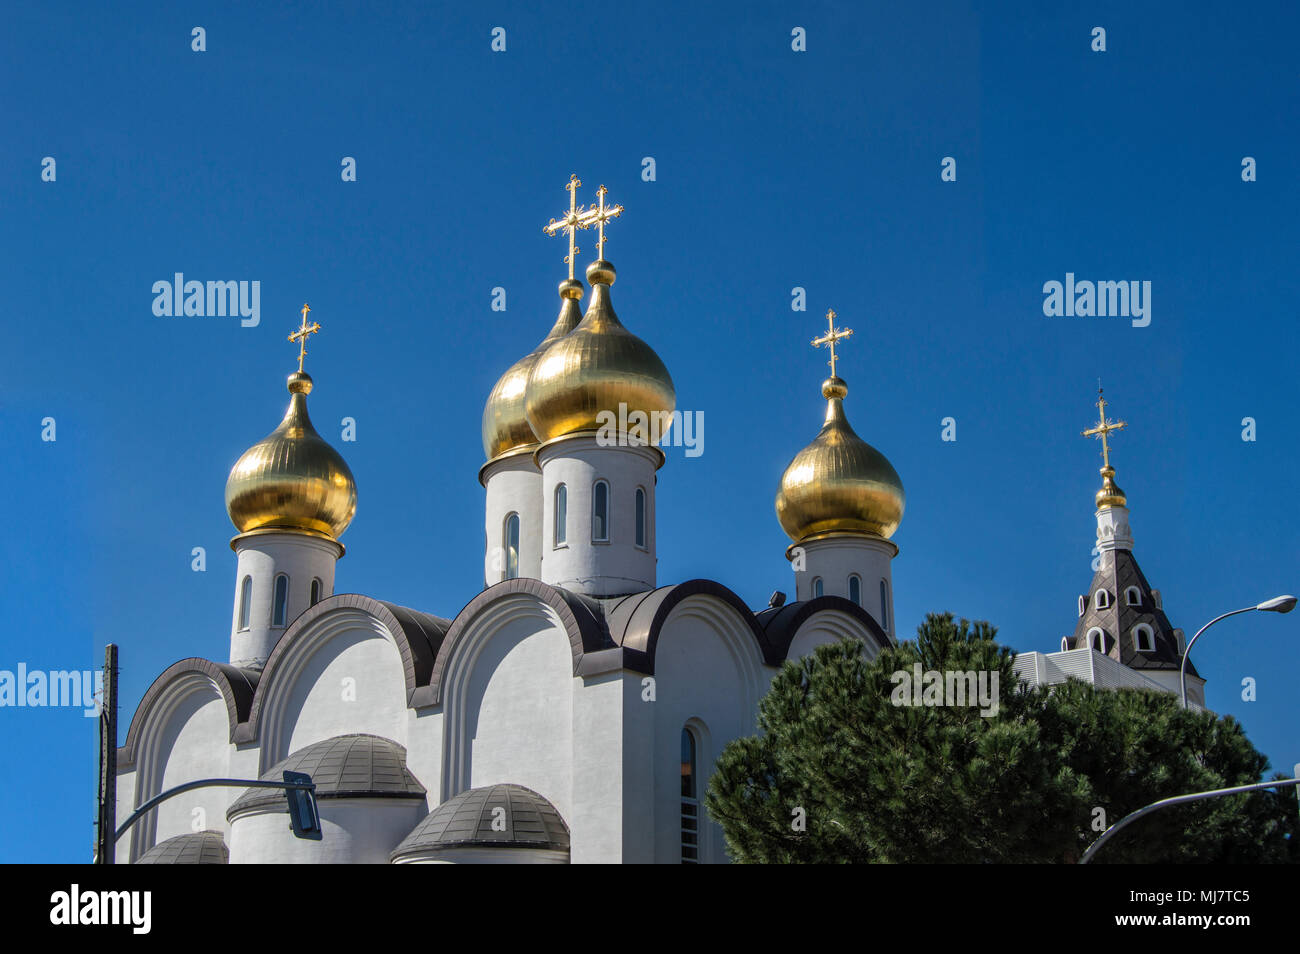 Cupole dorate della chiesa ortodossa russa di Santa Maria Magdalena in Madrid. Spagna europa. Foto Stock